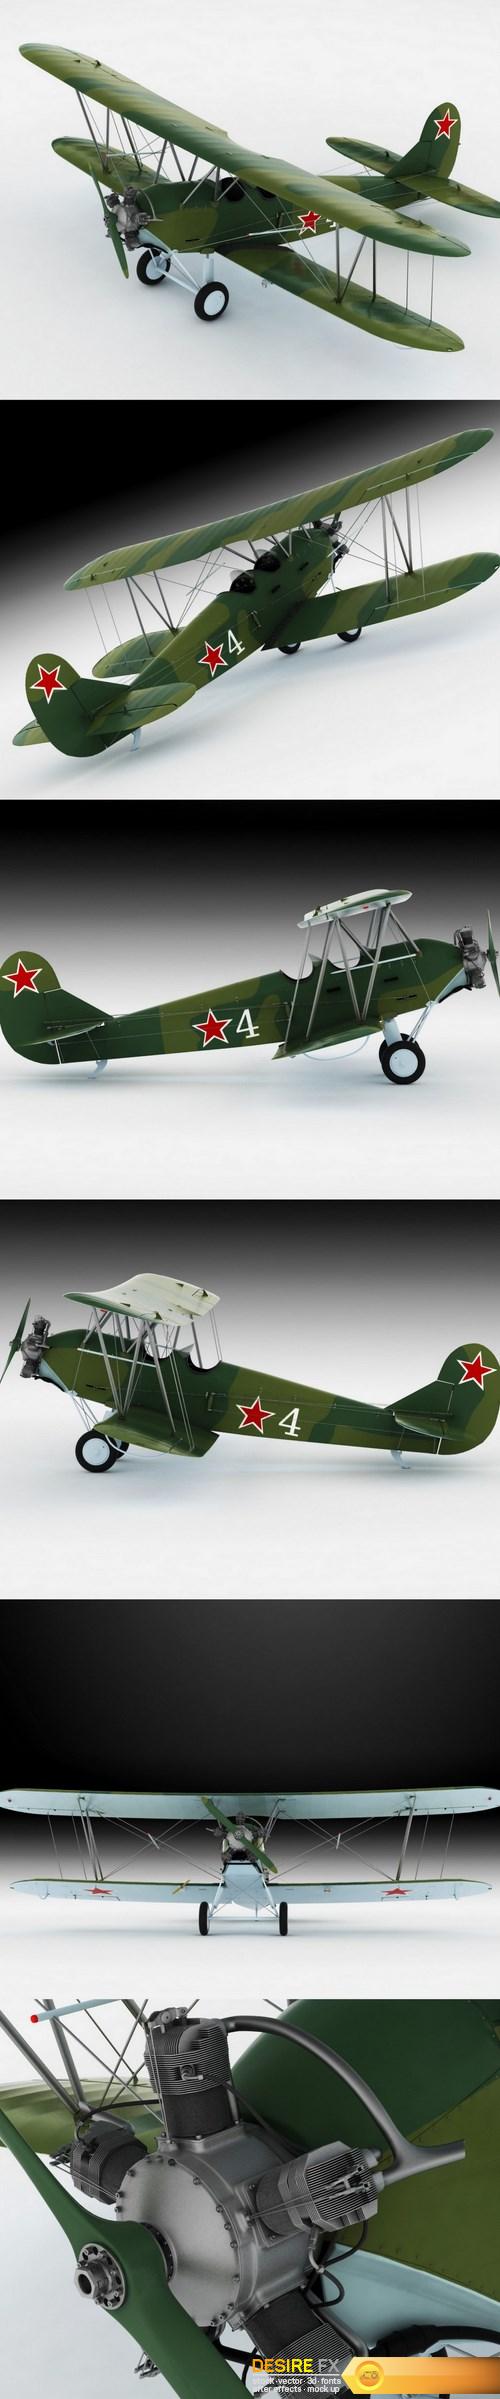 Po-2 Polikarpov Soviet biplane 3D model